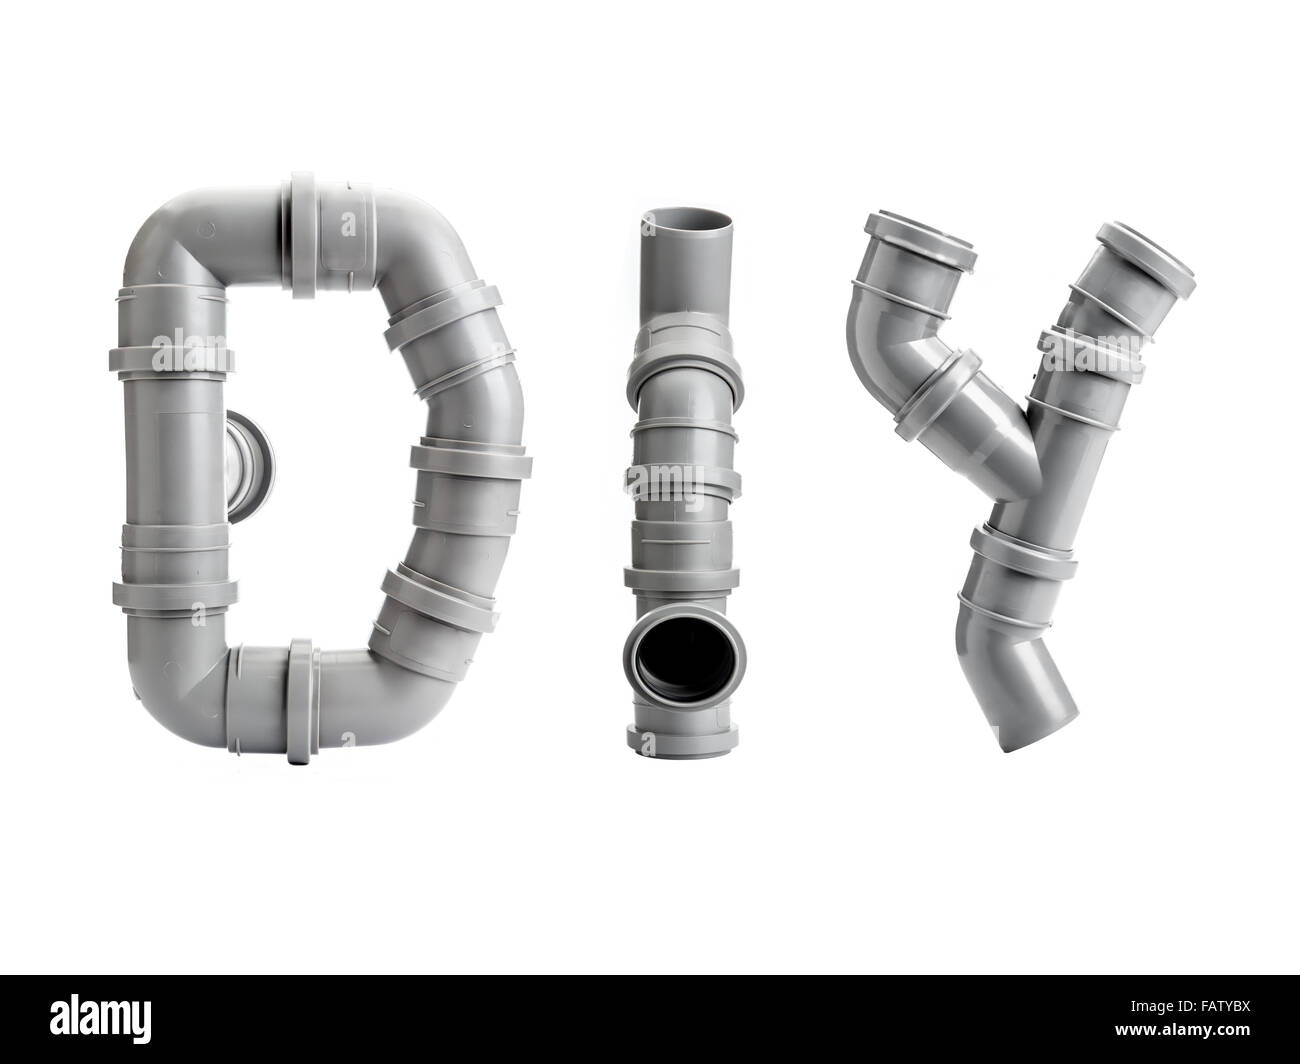 Acronyme DIY organisé à partir de différents éléments de tuyauterie PVC shot on white Banque D'Images